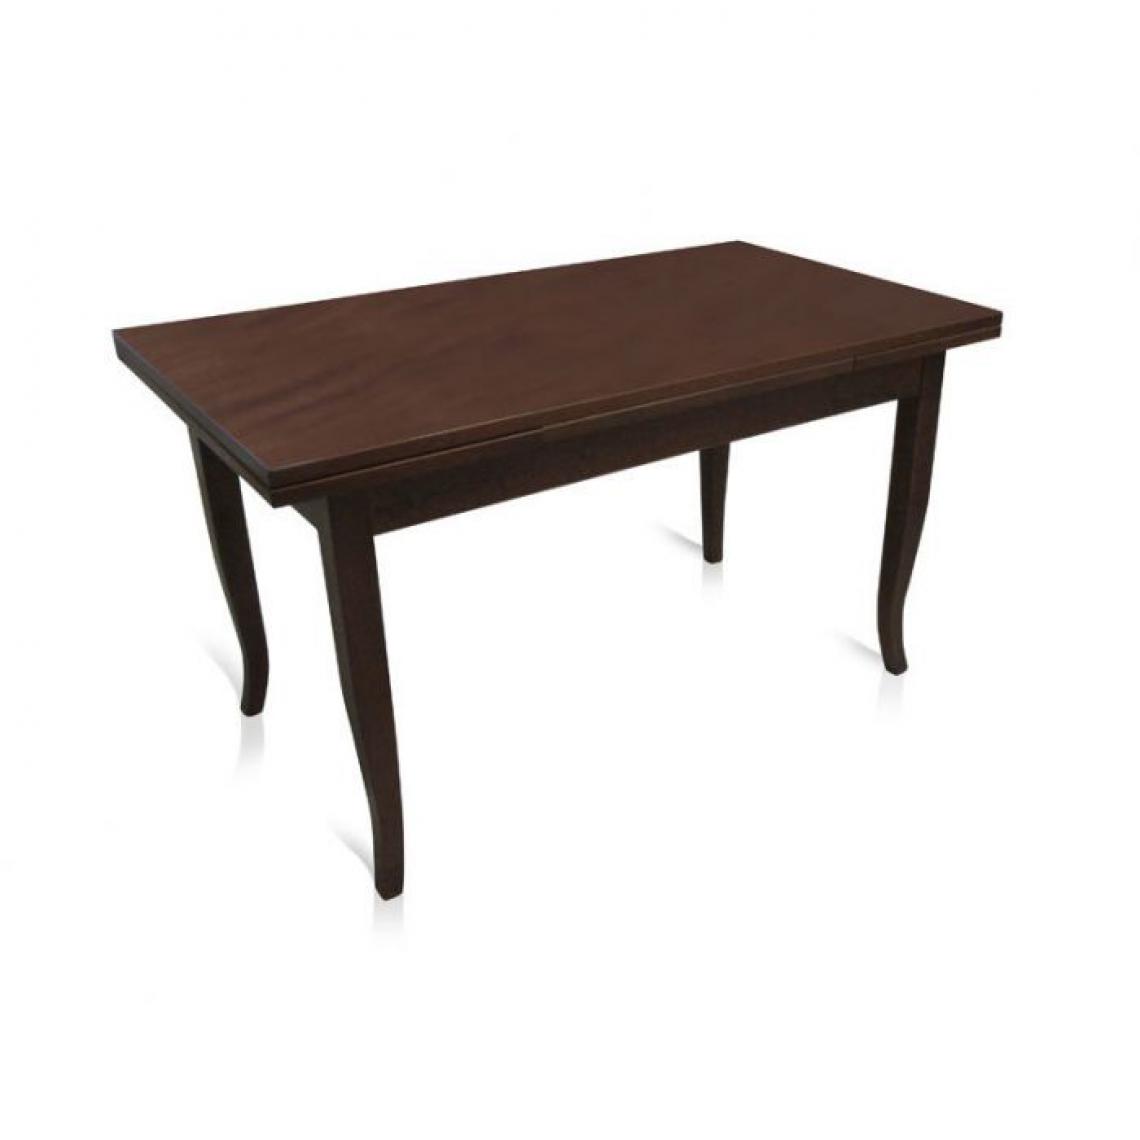 Alter - Table extensible, en bois couleur noyer, 140x80x79,50 cm, avec 2 rallonges de 40 cm - Tables à manger